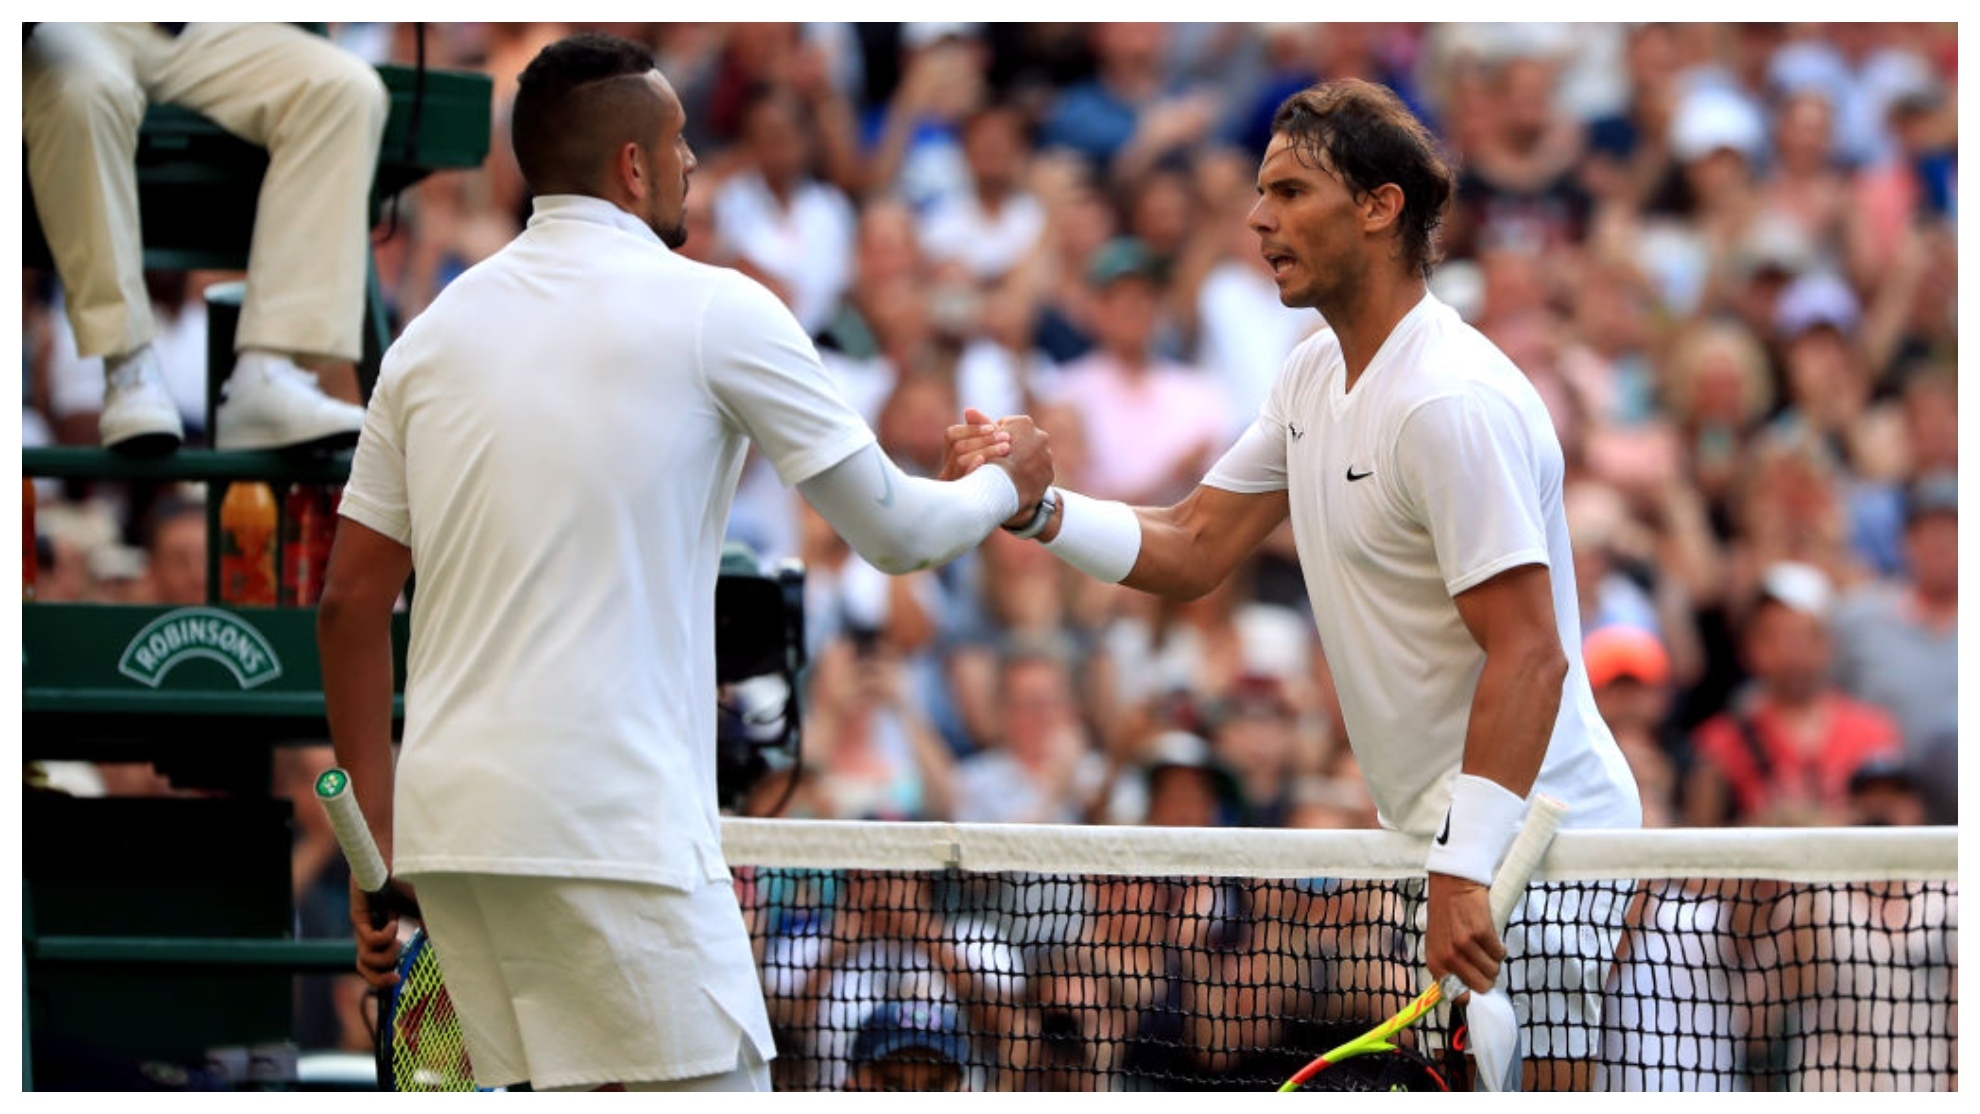 Kyrgios and Nadal at the Wimbledon net